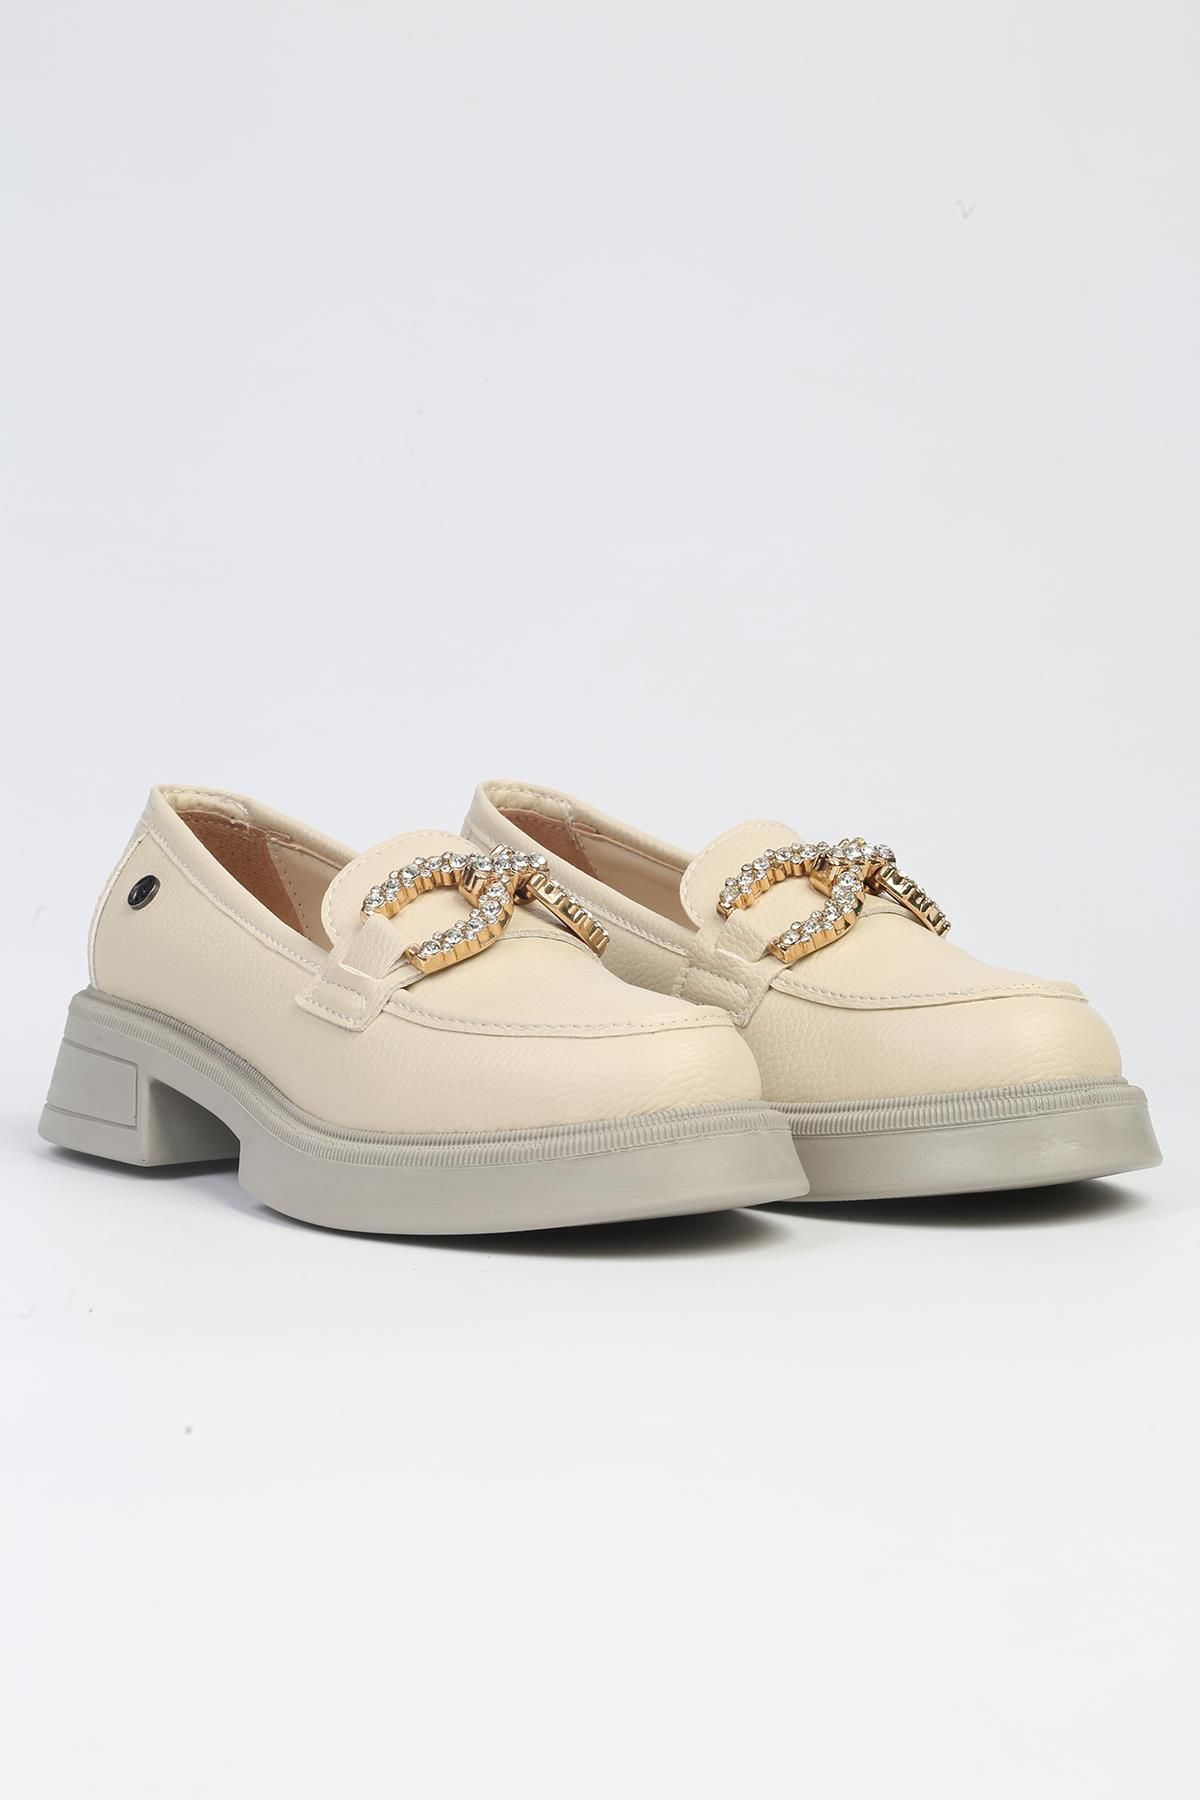 Pierre Cardin ® | PC-53161 - 3441 Bej-Kadın Günlük Ayakkabı